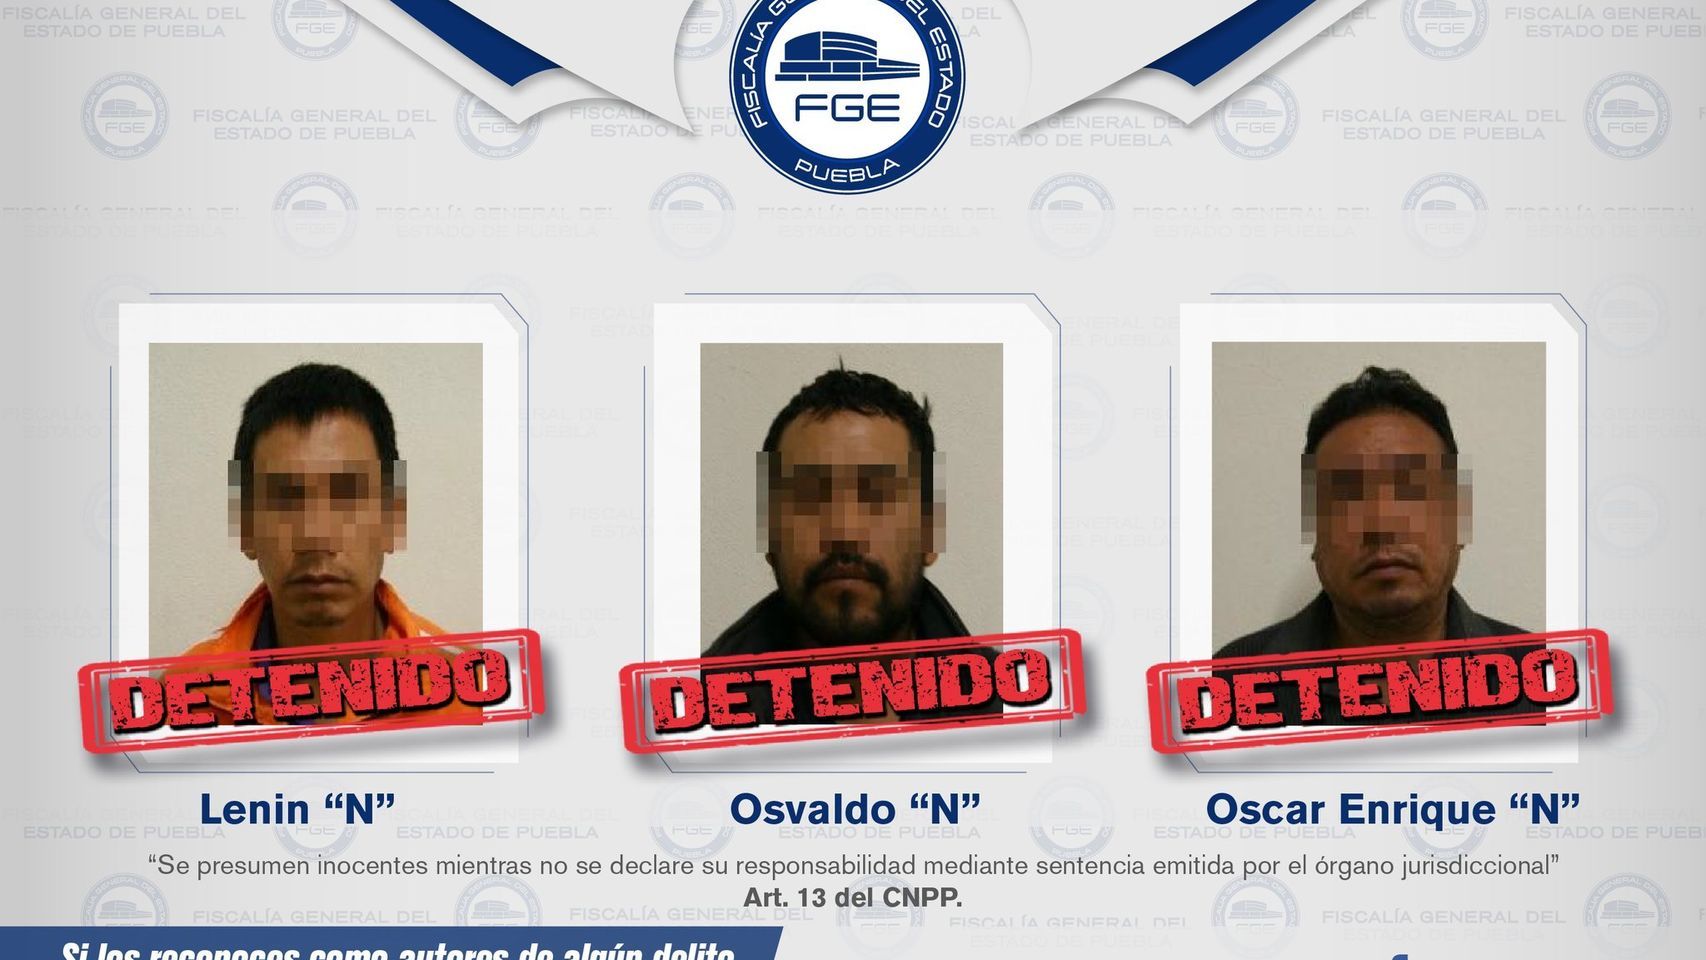 Ficha policial de los detenidos facilitada por la Fiscalía de Puebla.